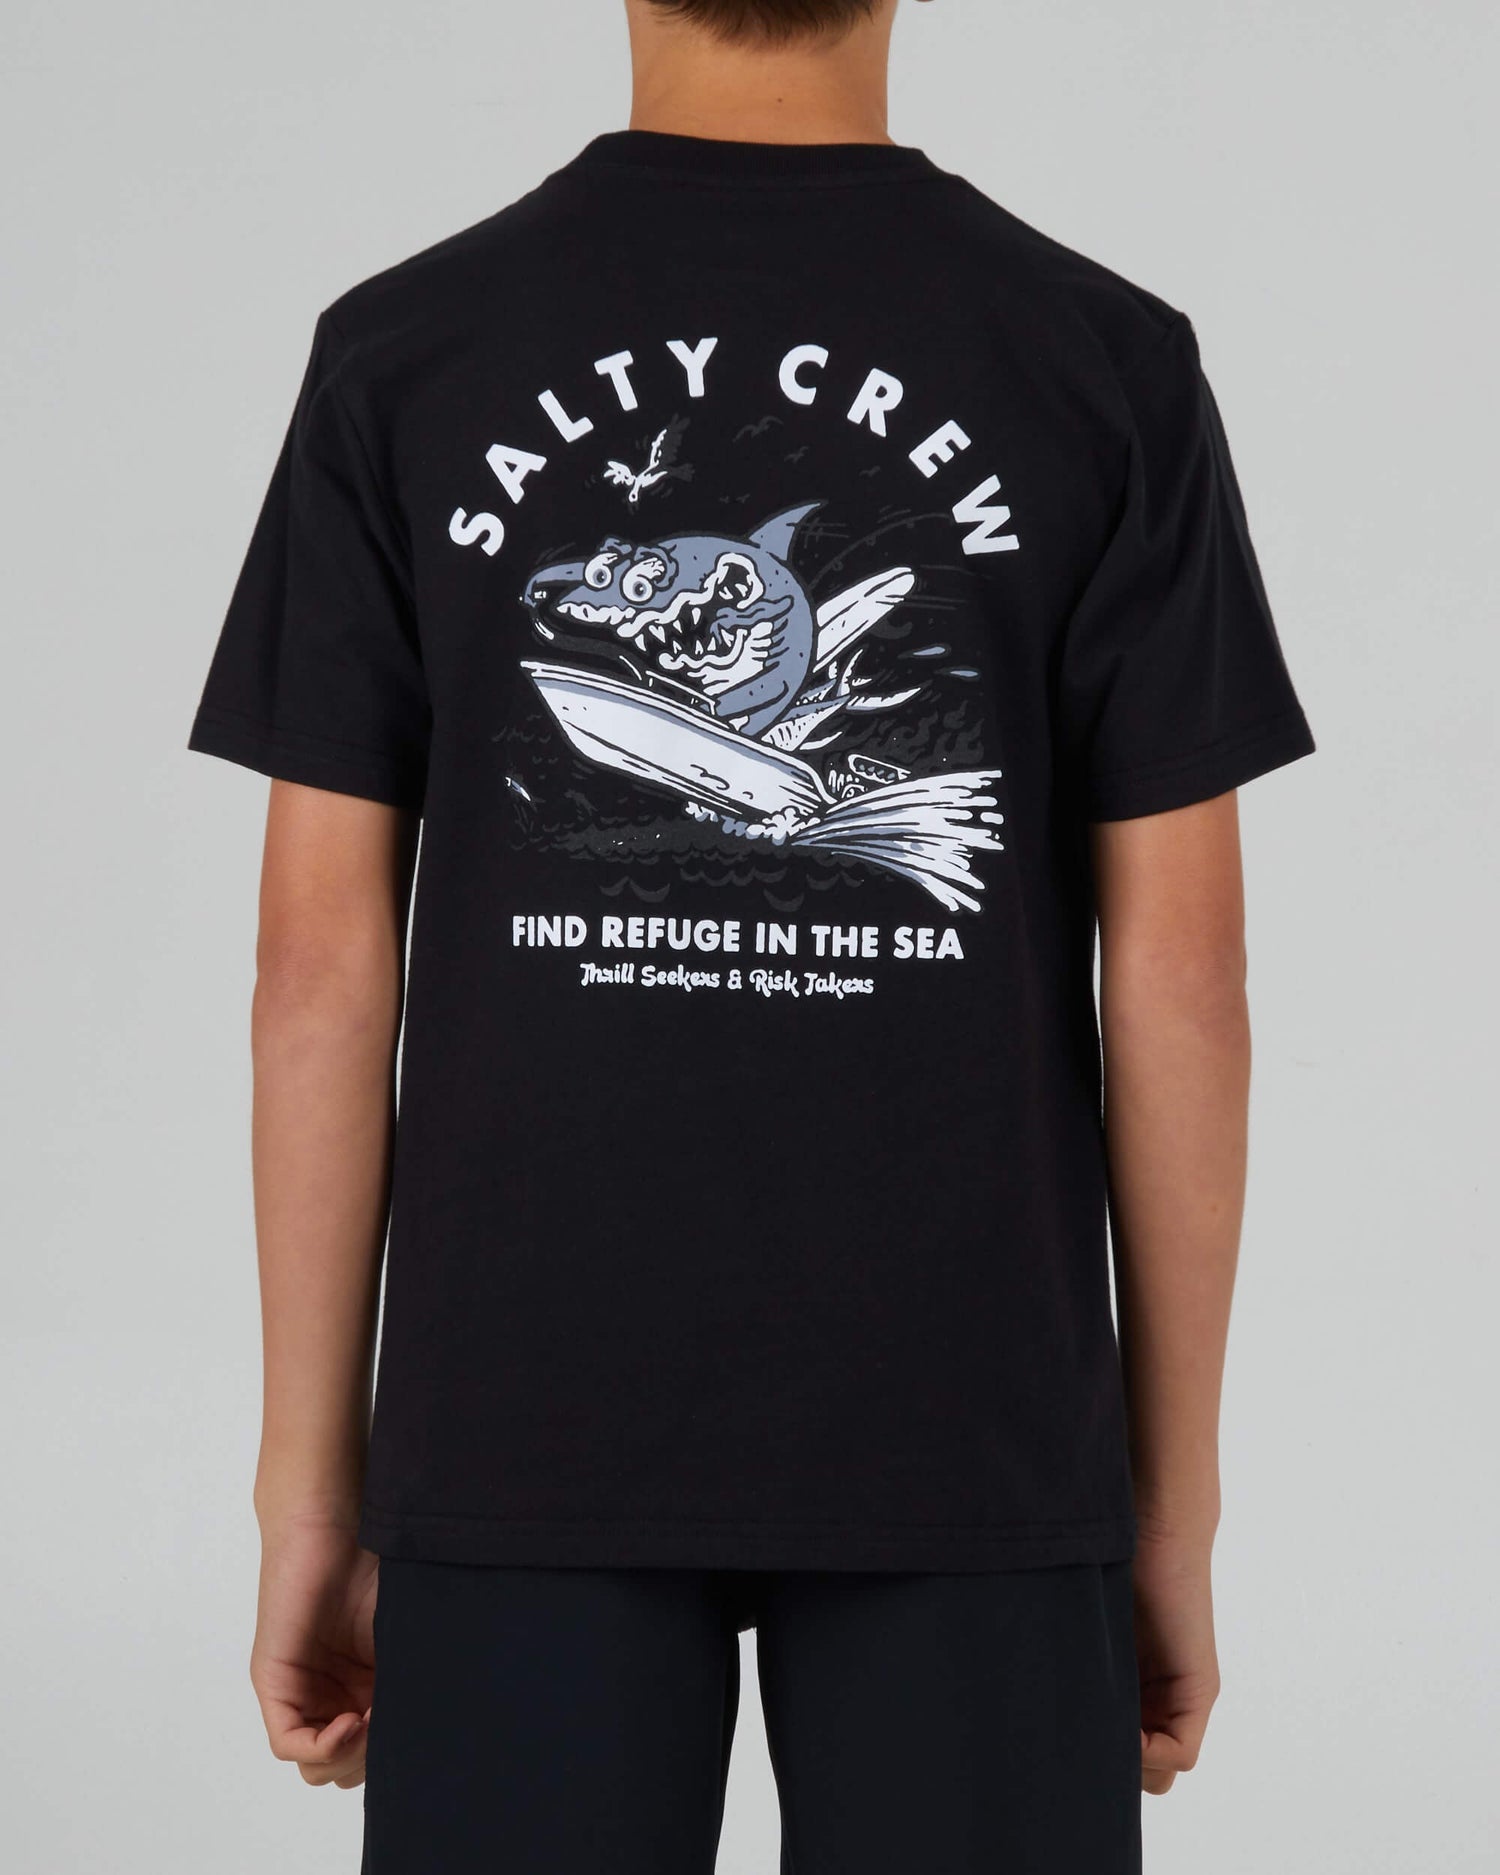 Salty Crew Boys - Hot Rod Shark Boys S/S Tee - Black